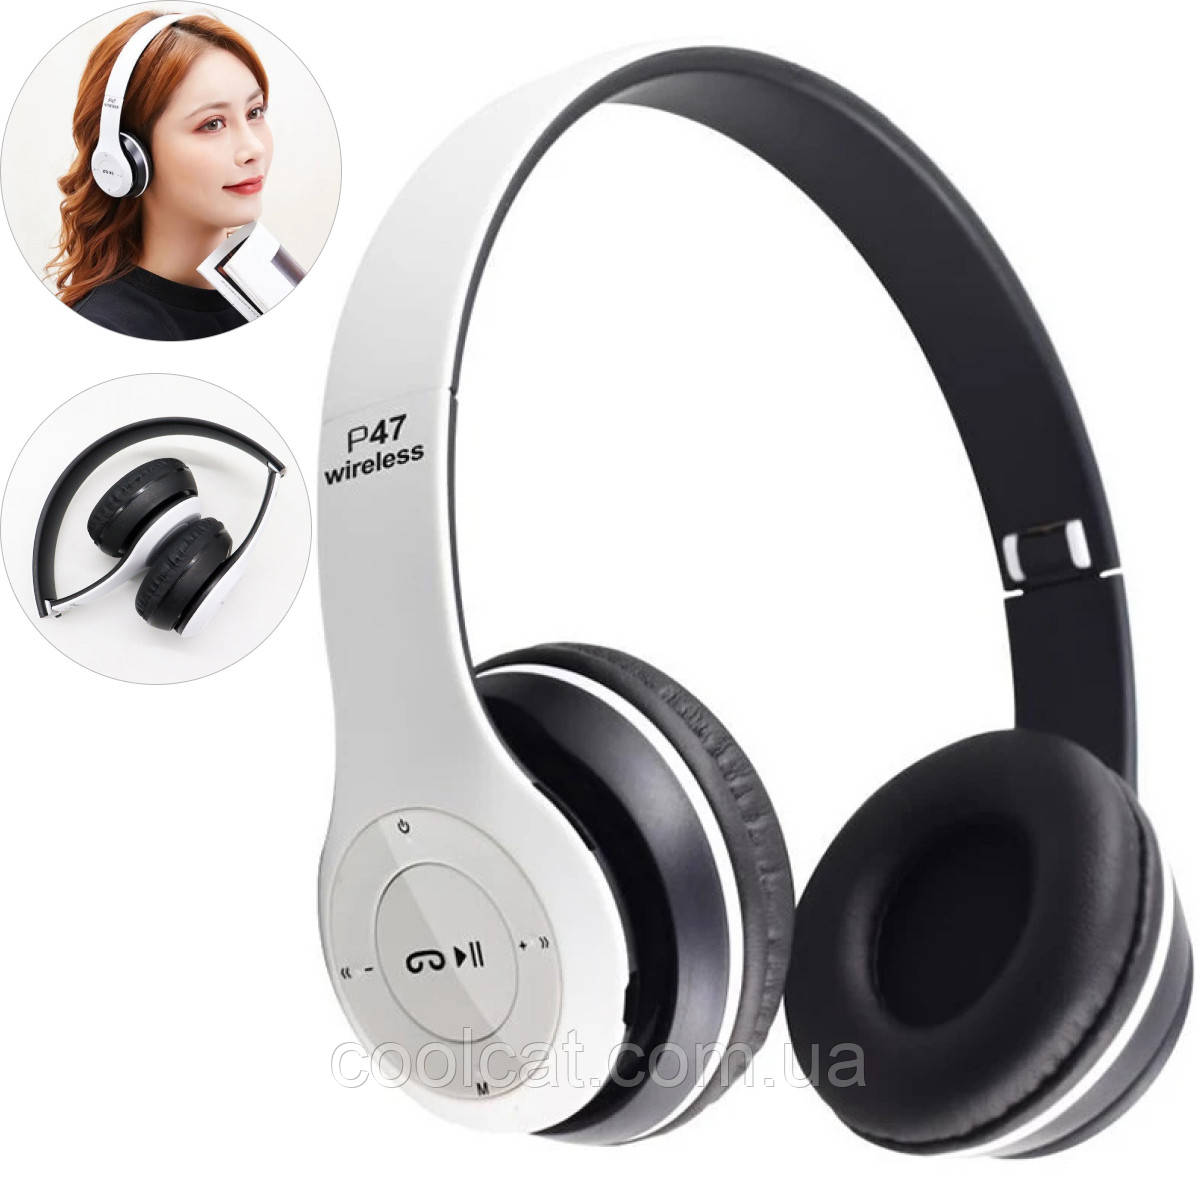 Бездротові Bluetooth навушники + MicroSD + FM Радіо P-47 / Накладні блютуз навушники з мікрофоном та MP3